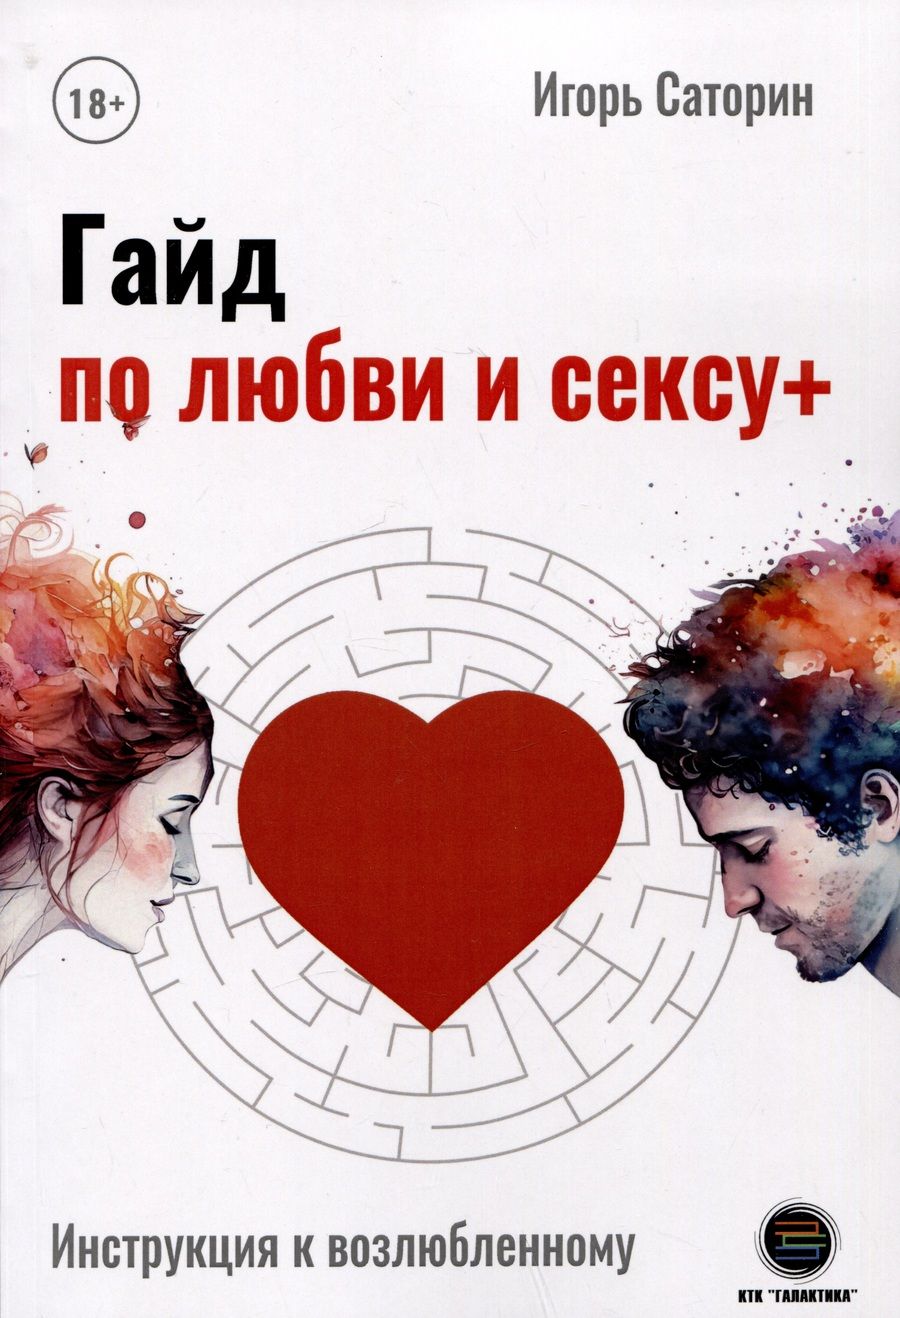 Обложка книги "Саторин: Гайд по любви и сексу+"